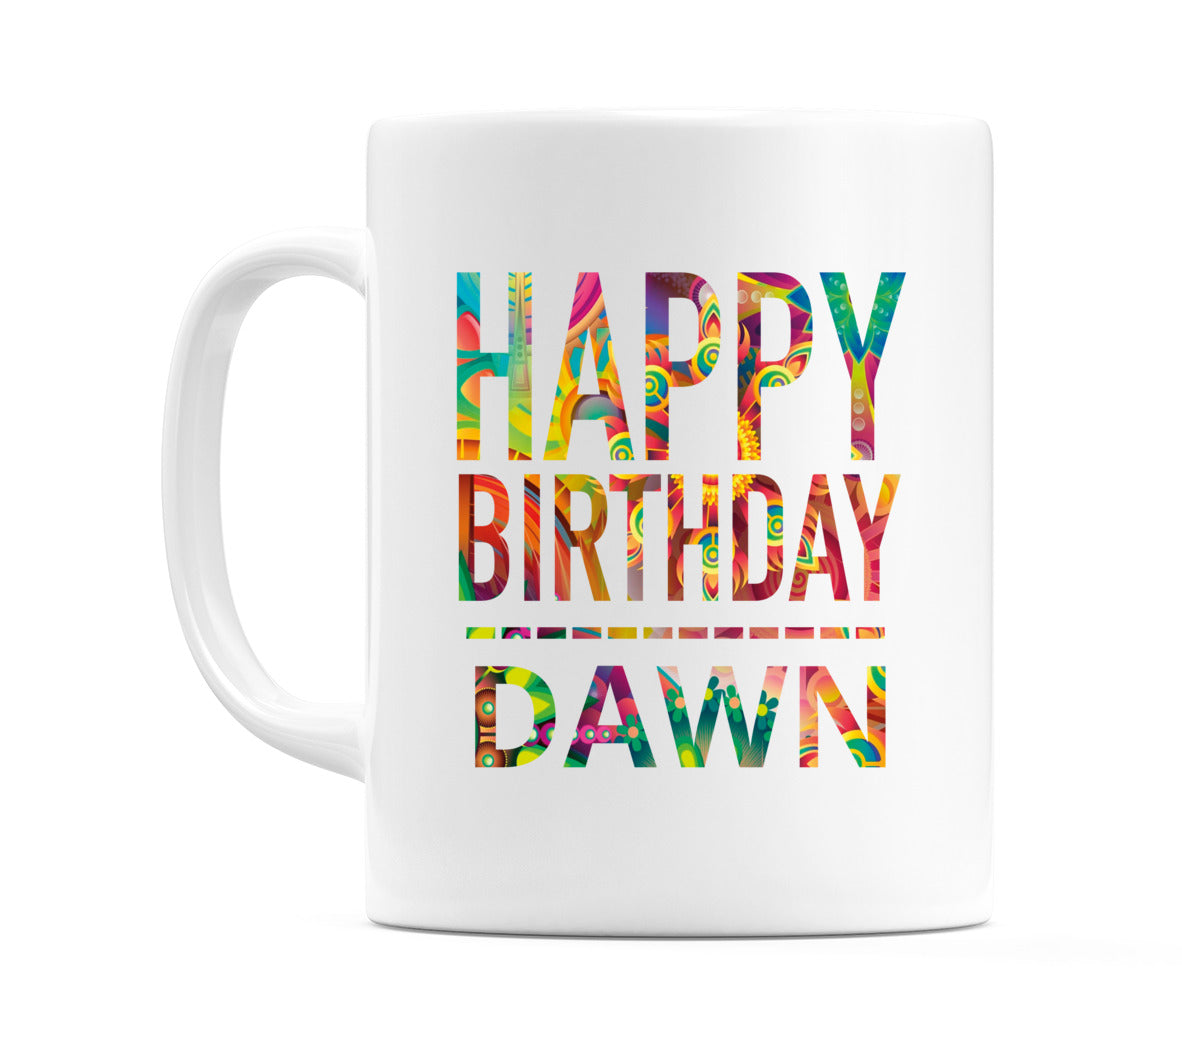 Happy Birthday Dawn (Tie Dye Effect) Mug Cup by WeDoMugs